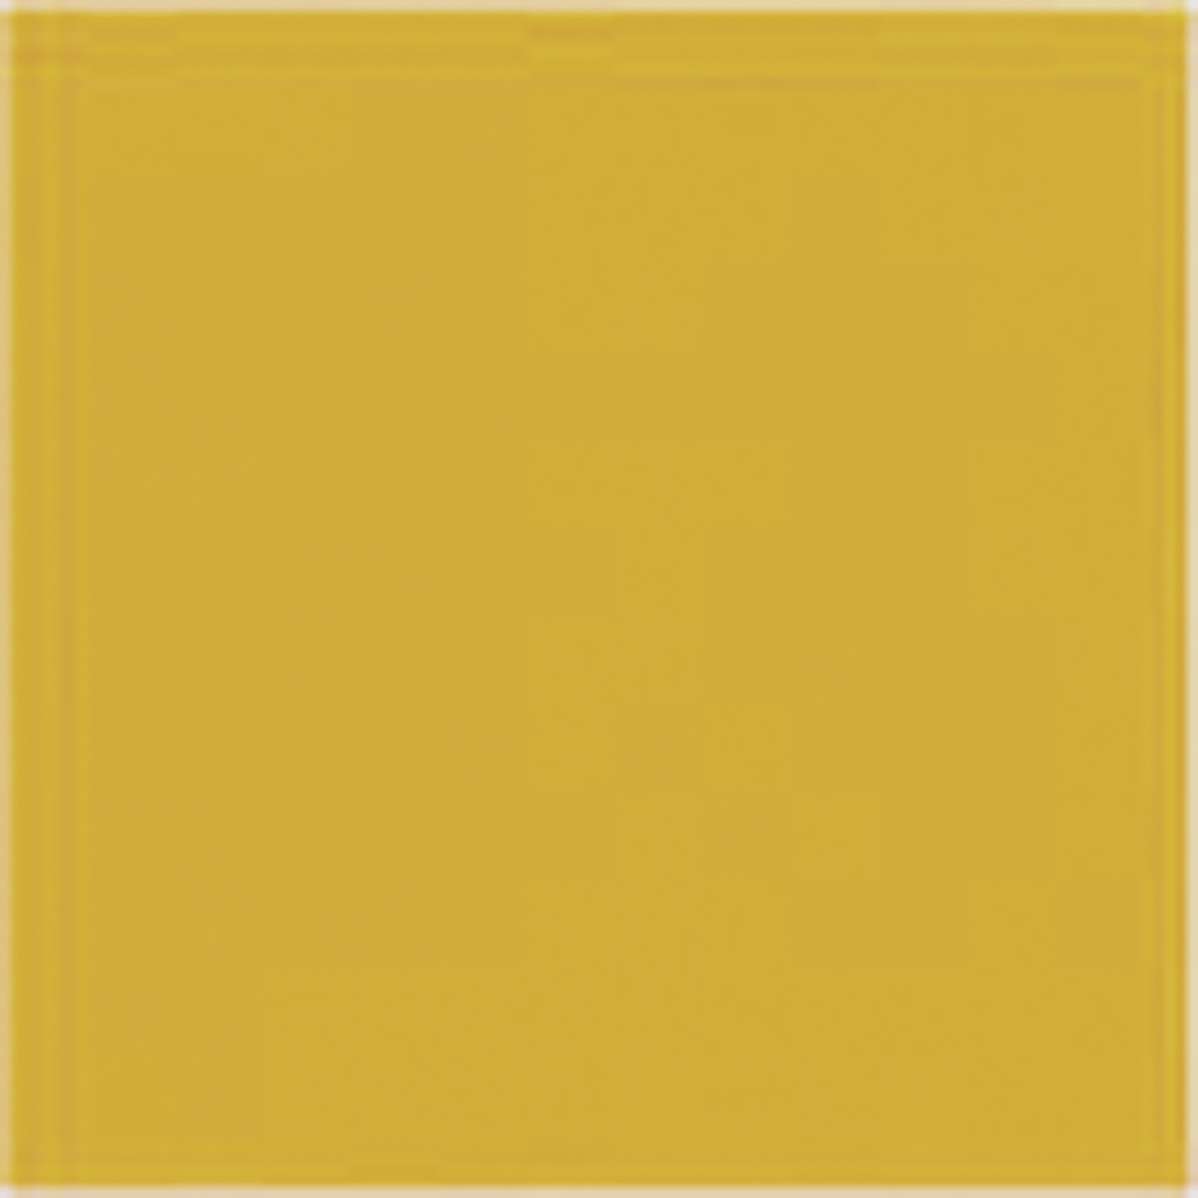 Керамическая плитка Veneto Beta Naranja, цвет жёлтый, поверхность глянцевая, квадрат, 200x200